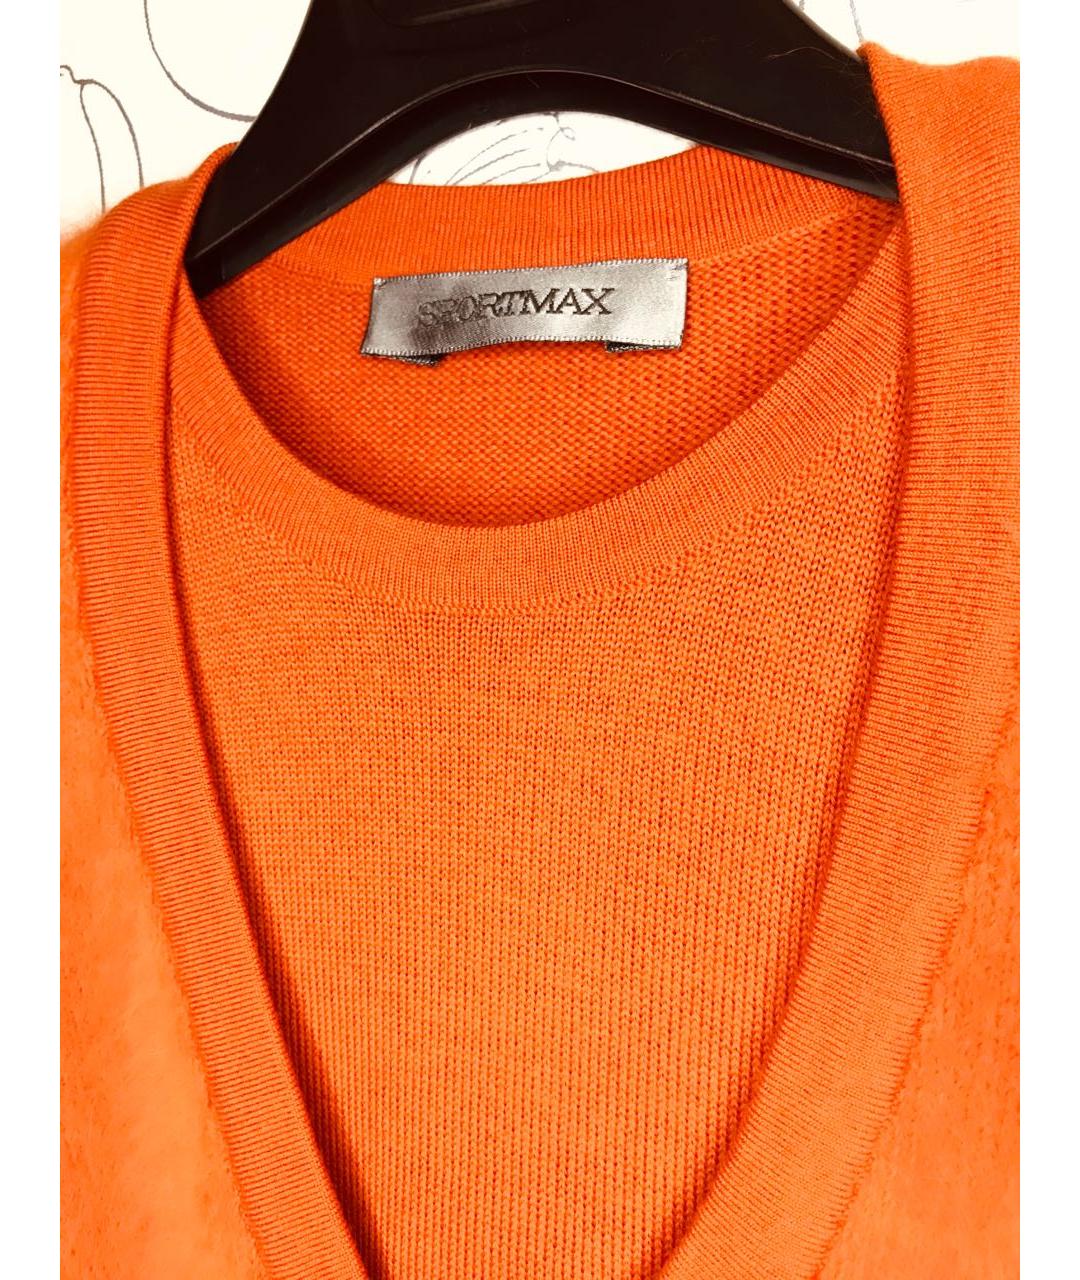 SPORTMAX Оранжевый шерстяной джемпер / свитер, фото 2